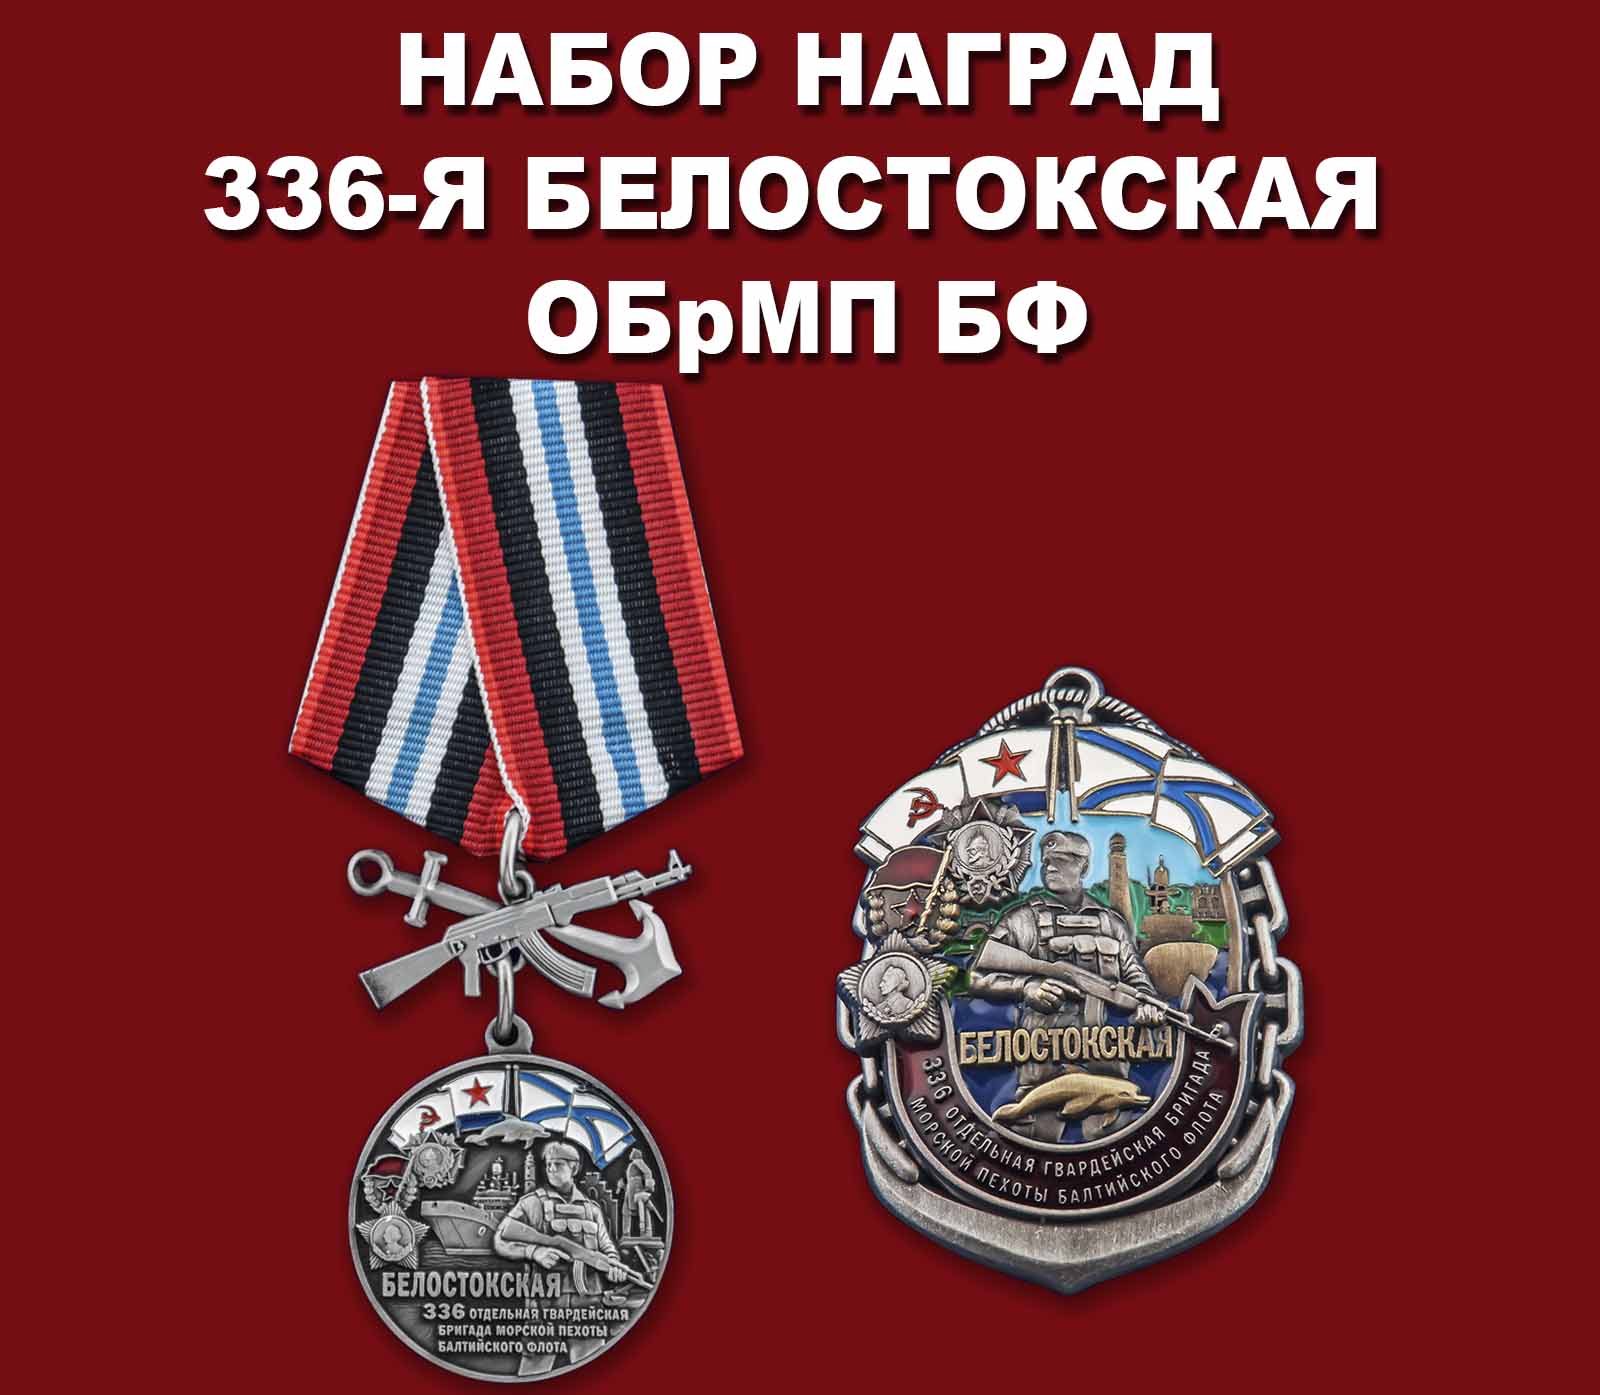 Купить набор наград "336-я Белостокская ОБрМП БФ"